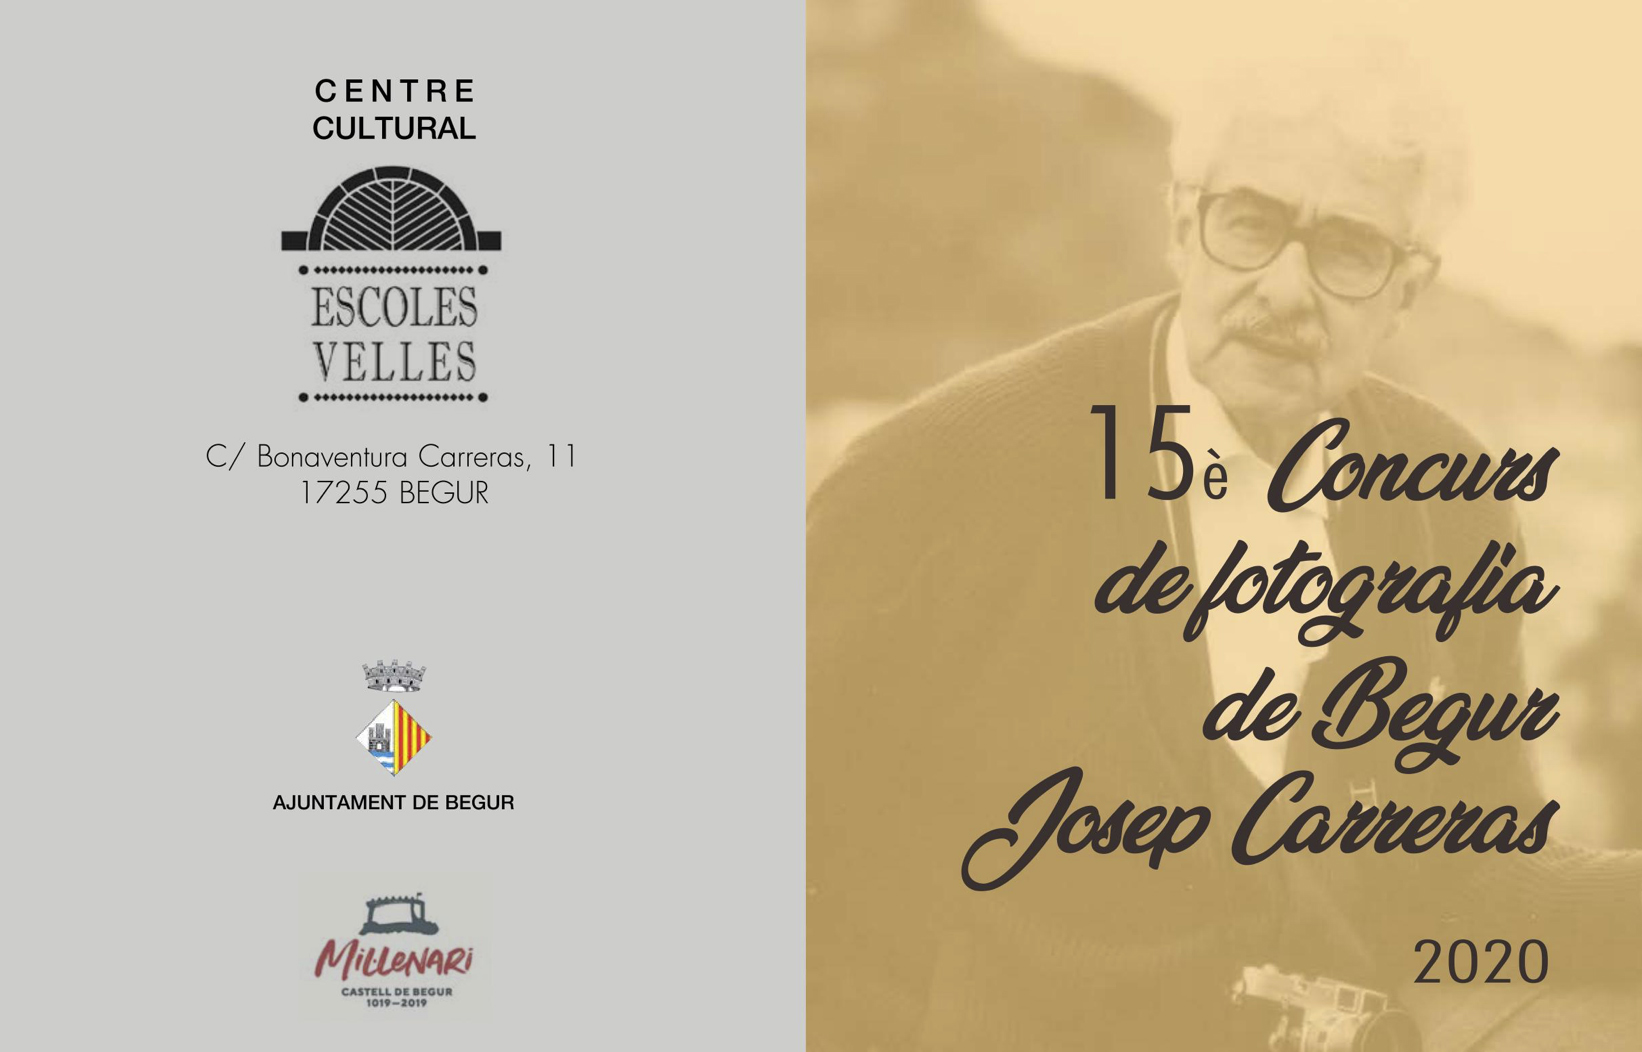 Obre la convocatòria del 15è Concurs de Fotografia de Begur Josep Carreras